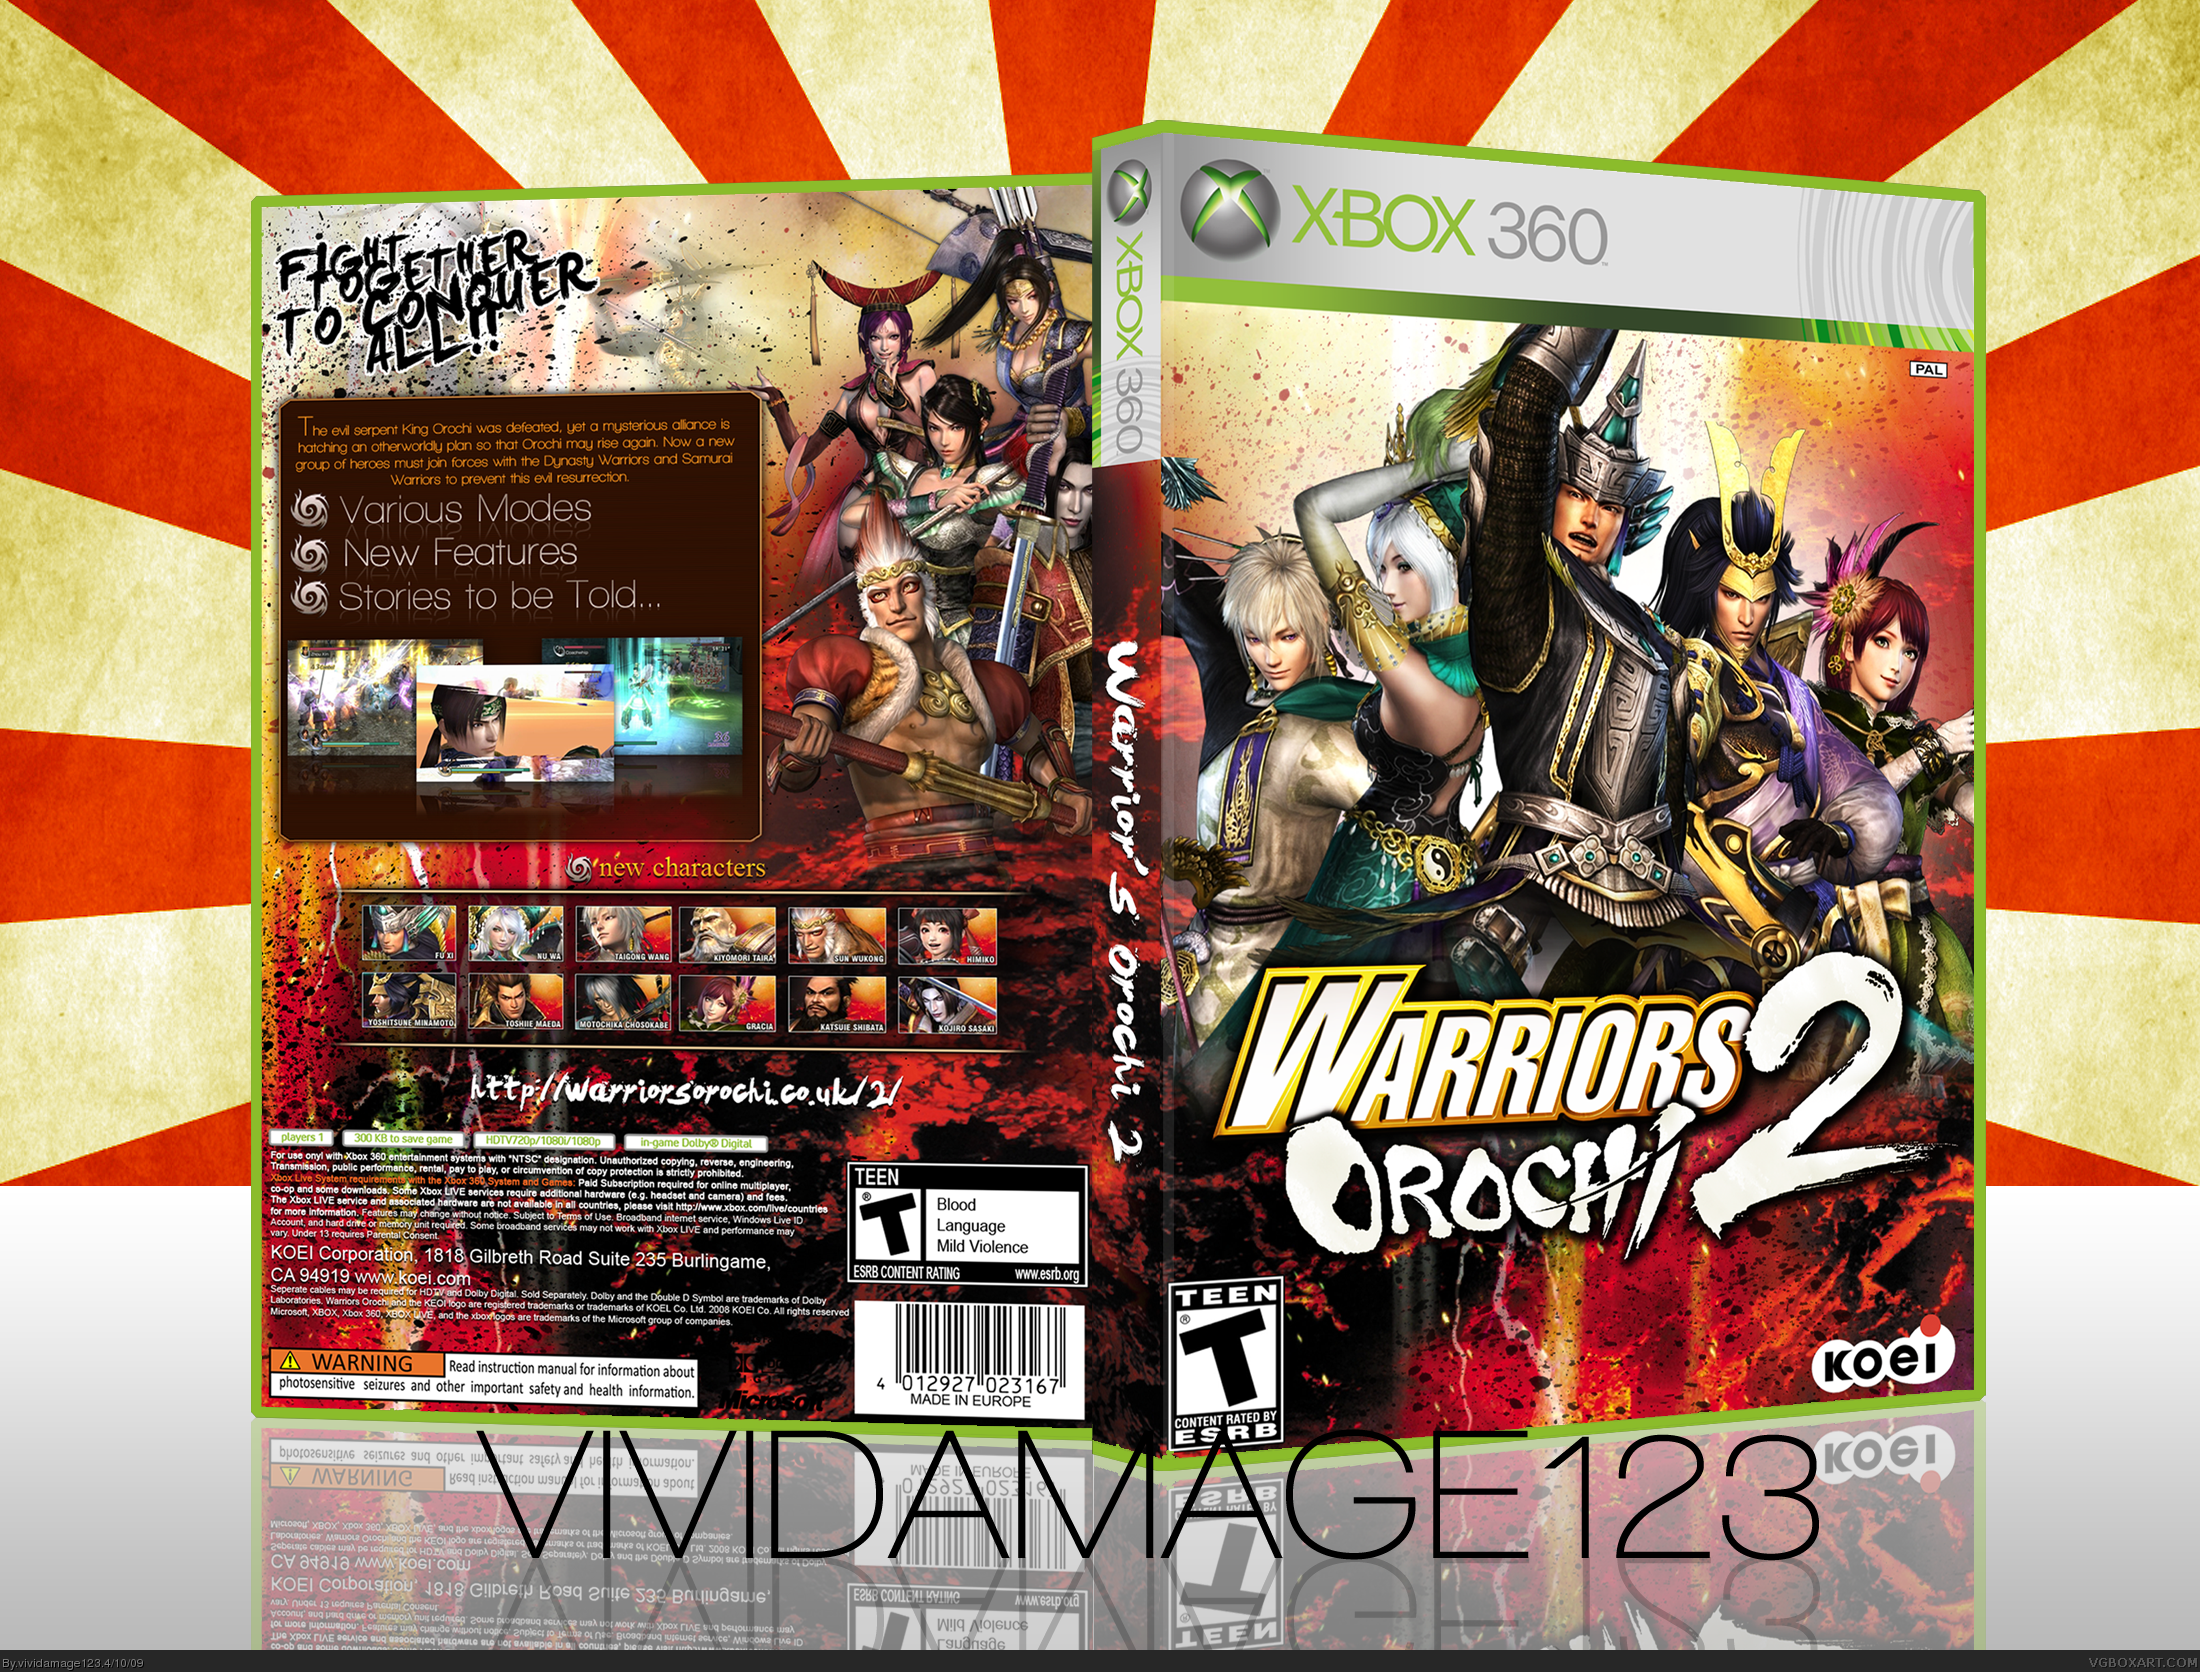 Warrior's Orochi 2 box cover